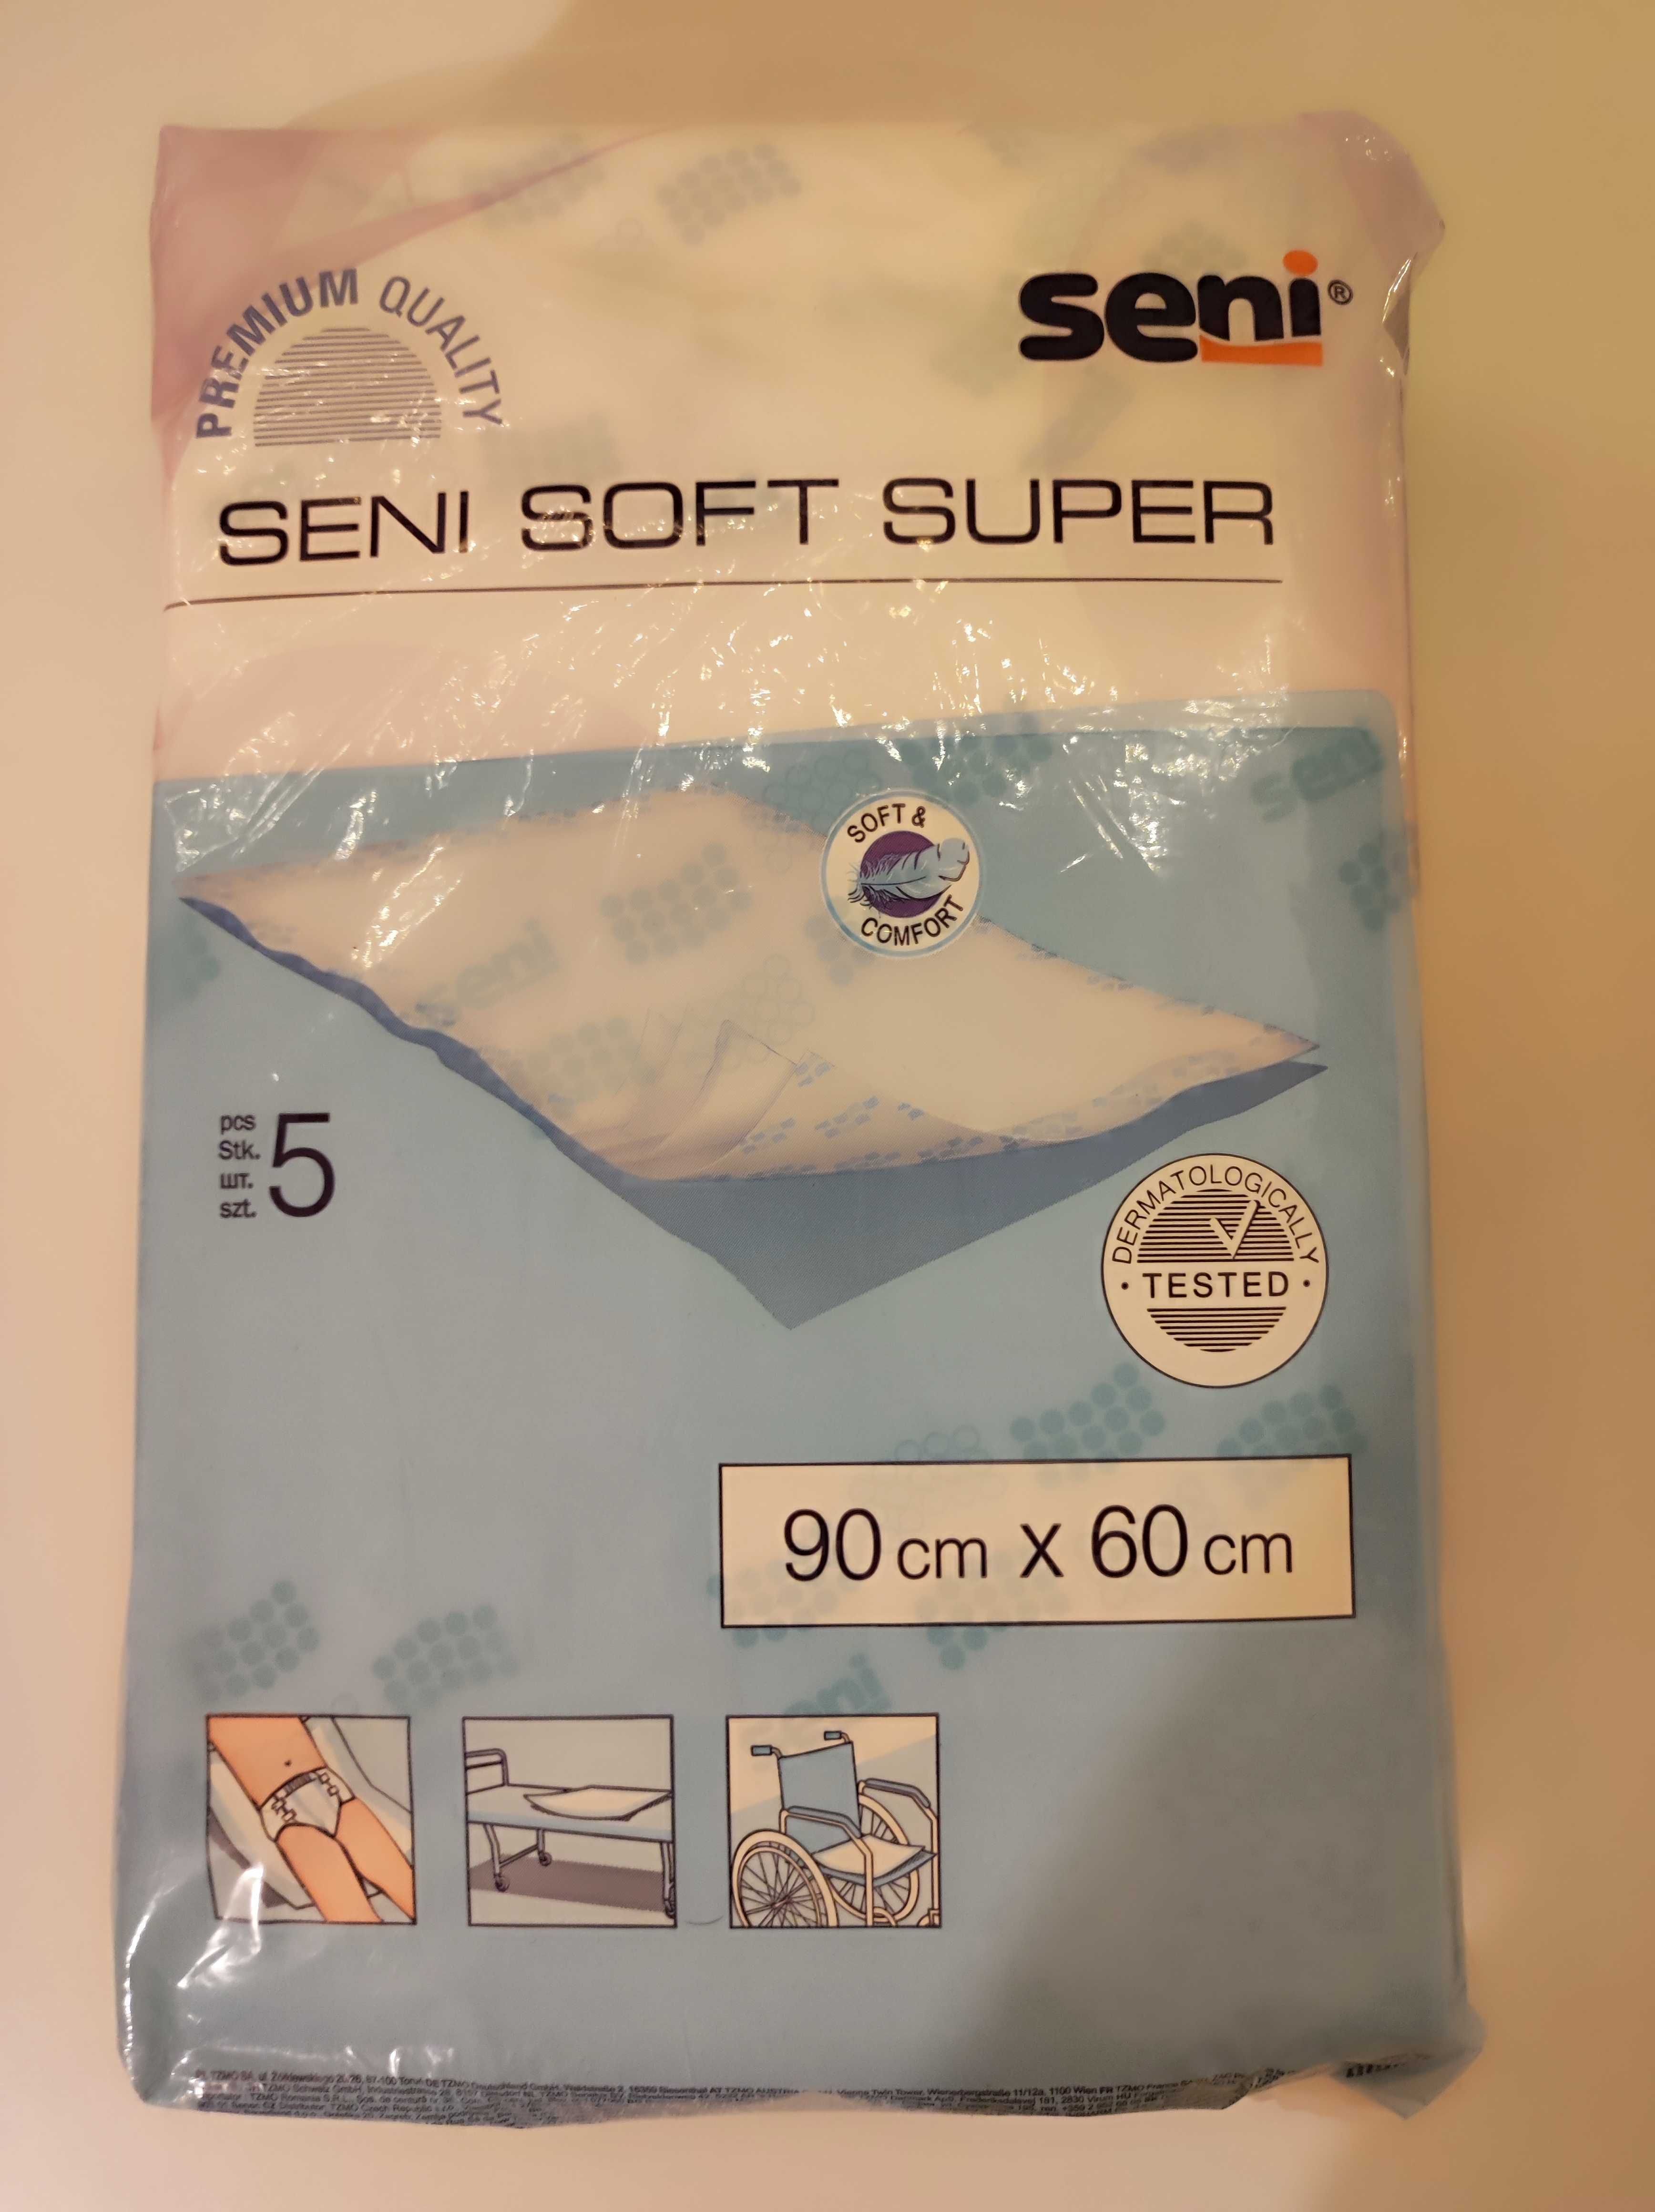 Podkłady higieniczne Seni Soft Super 90x60 cm 5 szt.